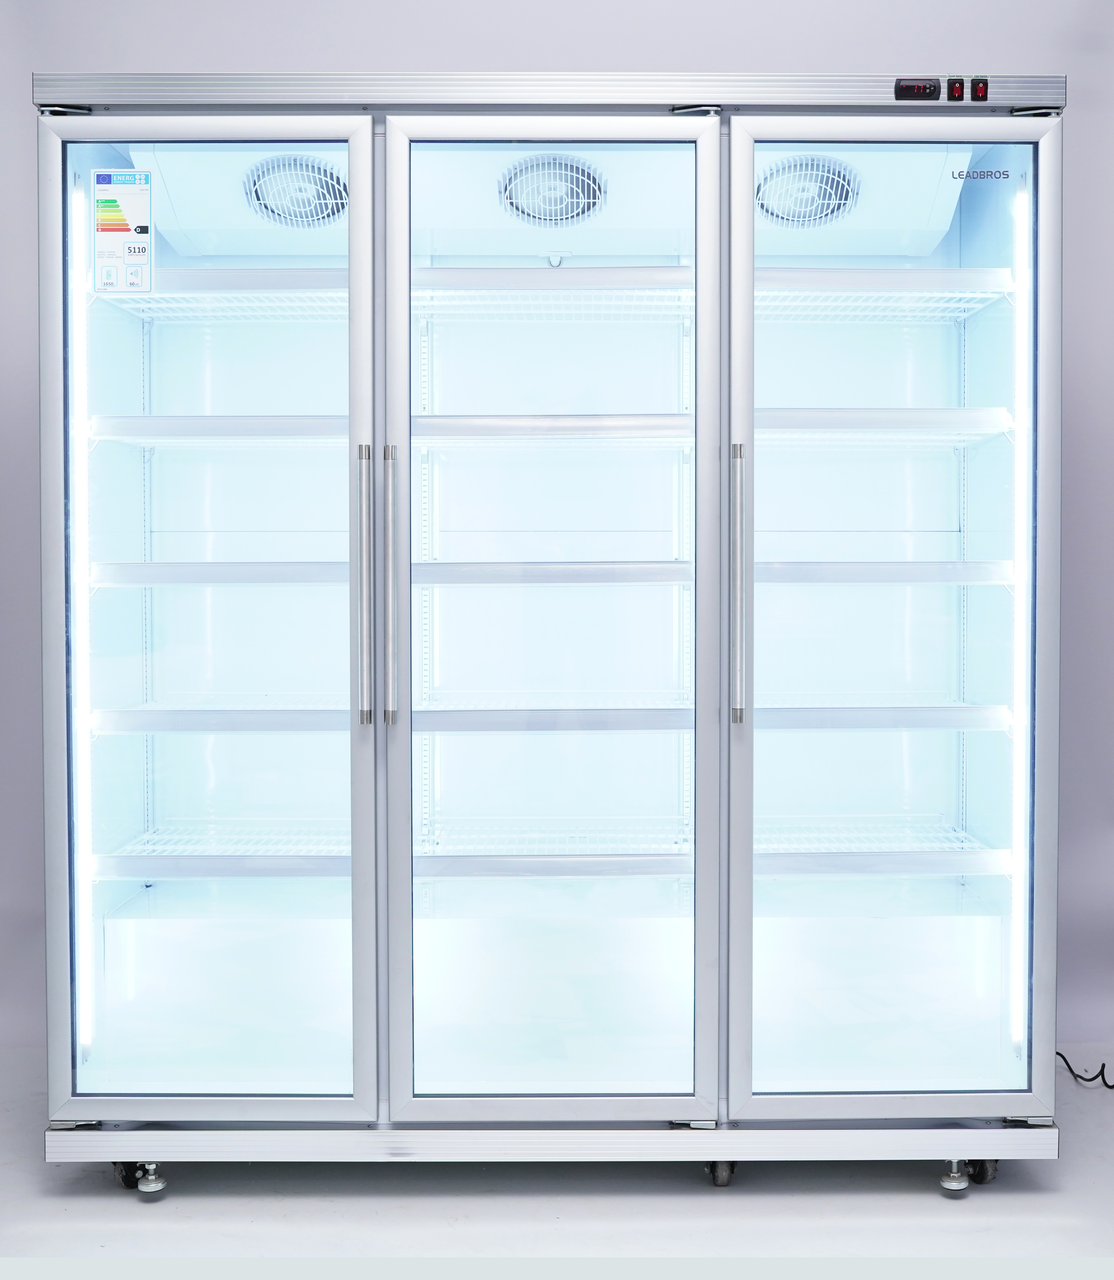 Вертикальный холодильник XLS-1700 NO FROST